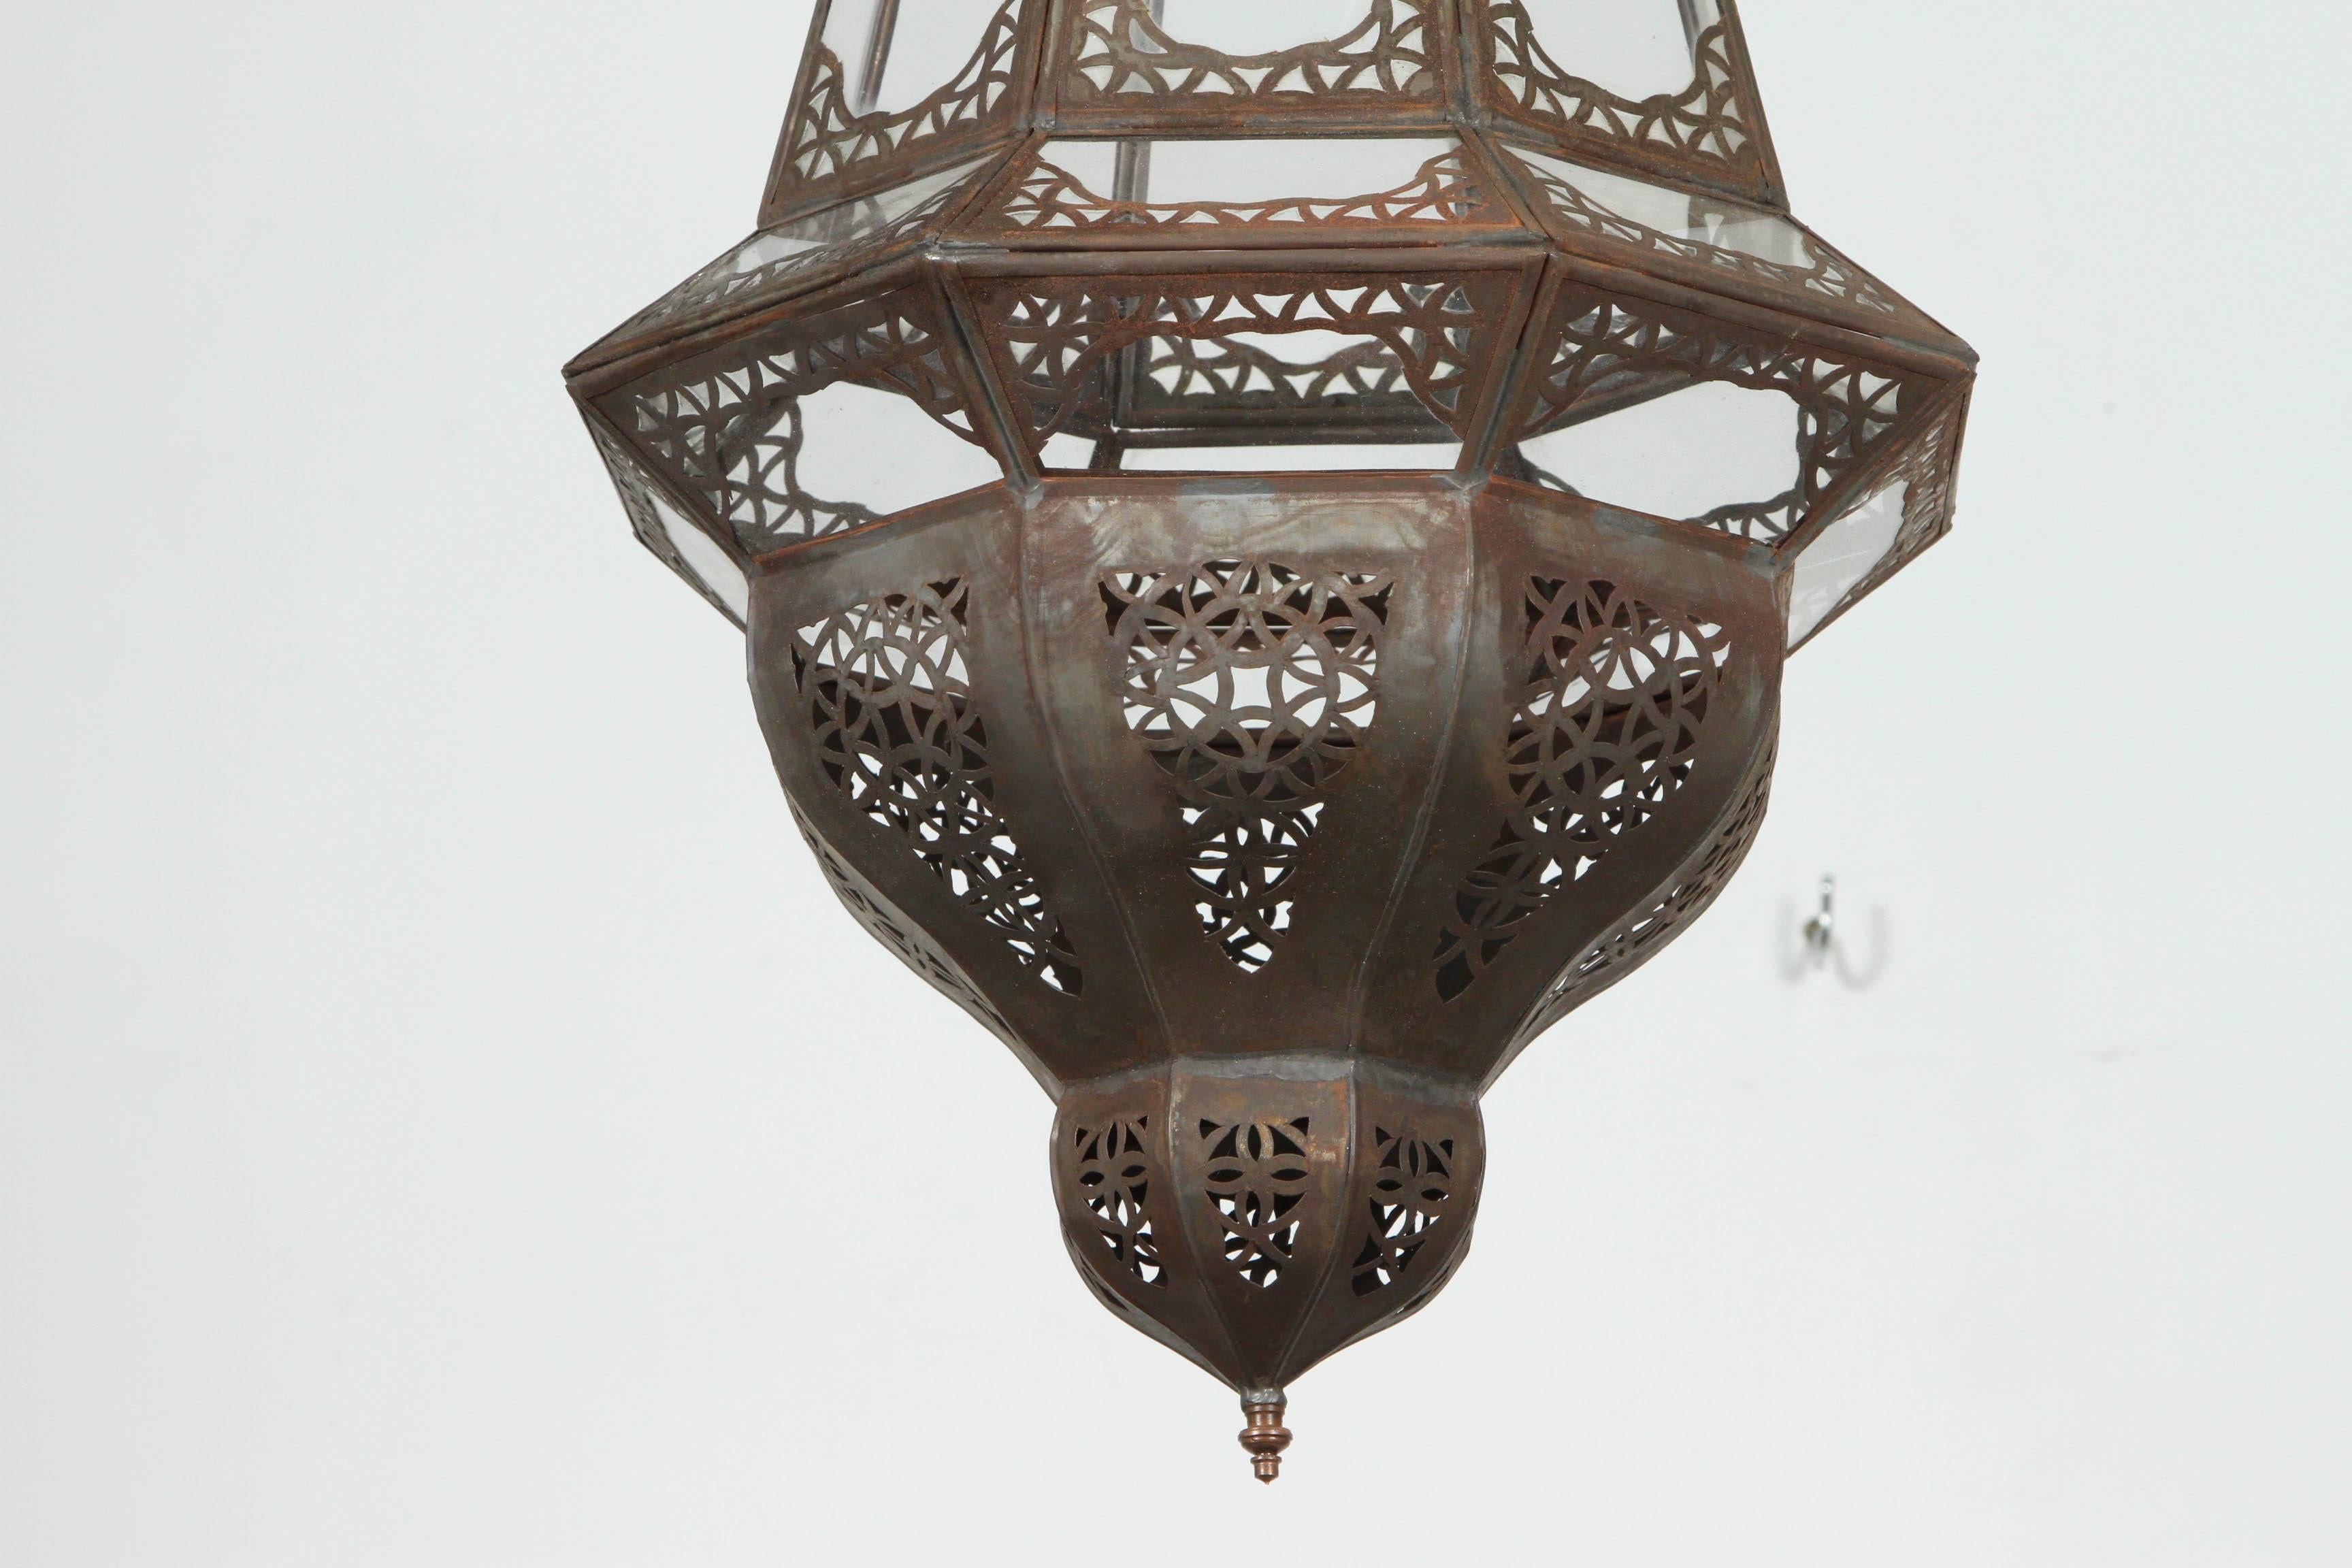 Elegante et élégante lanterne marocaine en verre clair fabriquée à la main avec un travail filigrané complexe dans le style mauresque.
Il ajoutera de l'élégance à n'importe quelle pièce.
Peut être utilisé comme applique murale ou comme lustre